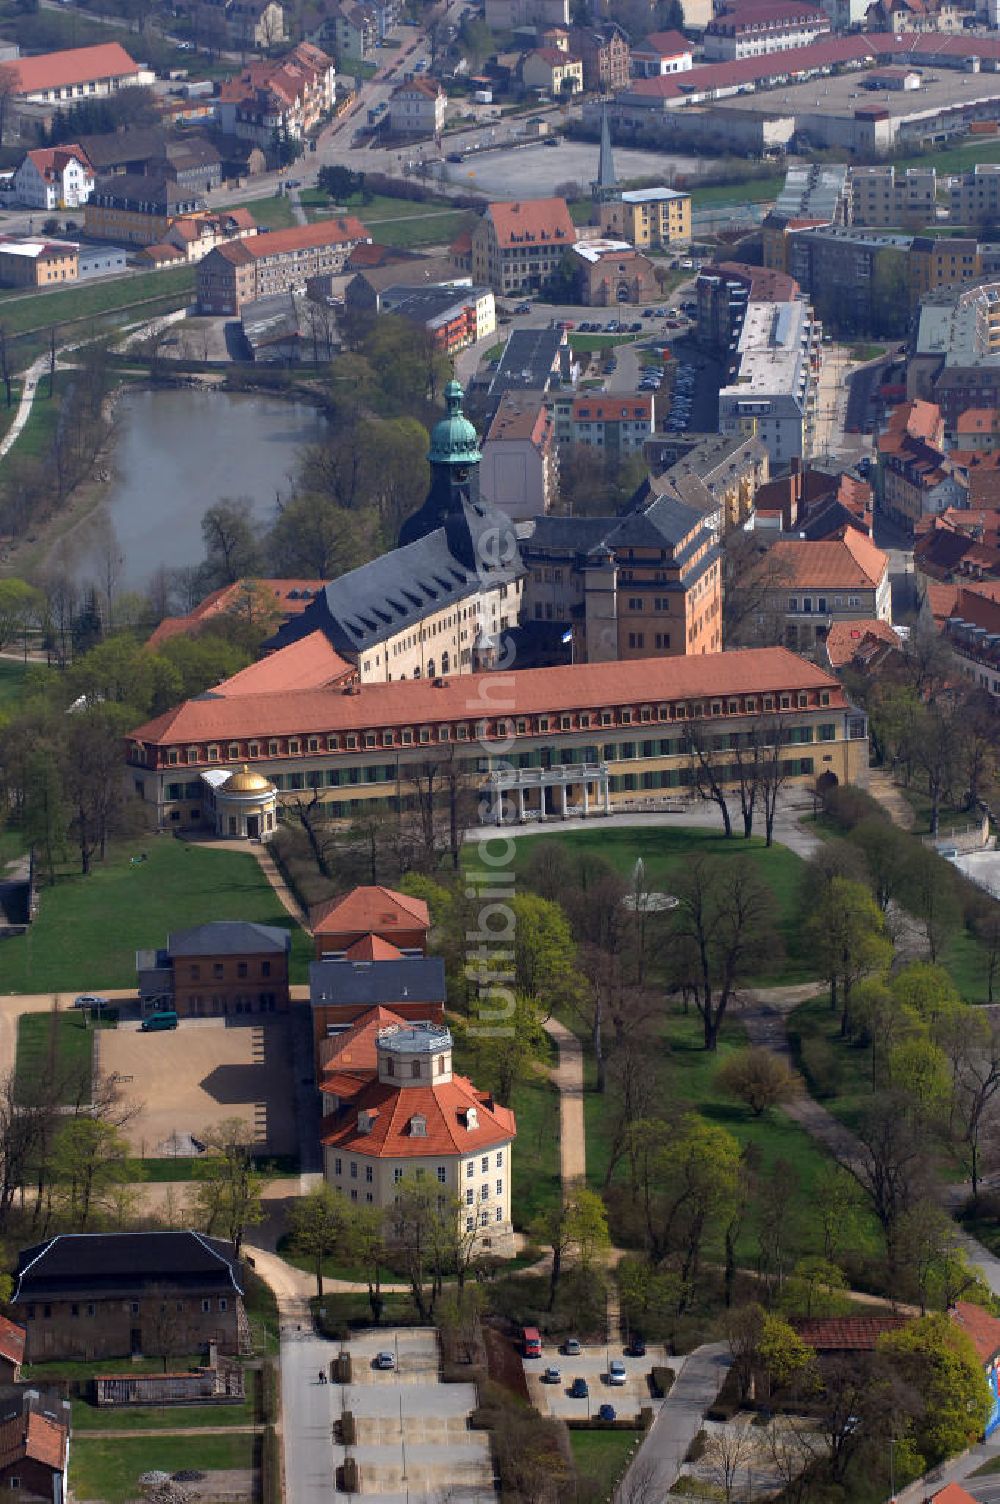 Luftbild Sonderhausen - Das Schloss Sondershausen mit dem Schlossmuseum und dem Achteckhaus